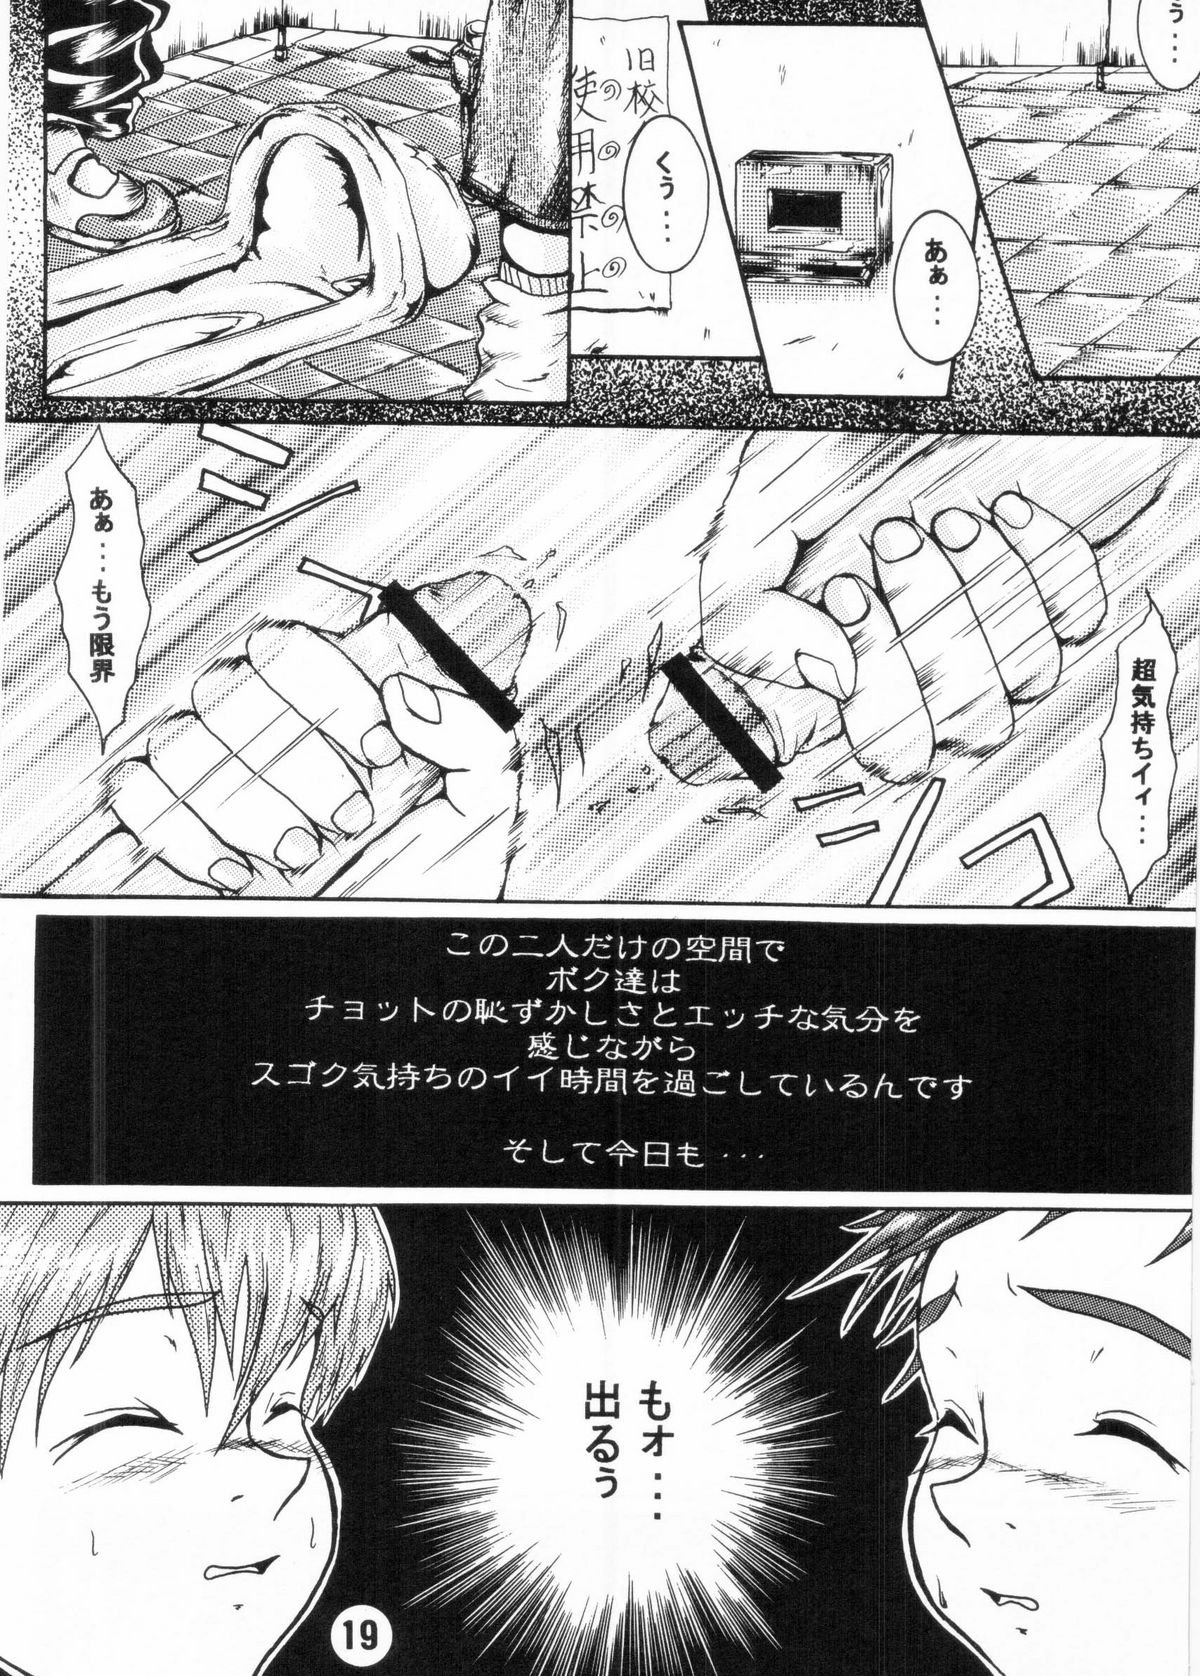 [Shota][Anthology] Nekketsu Project - Shounen Muscat Shake Vol.6 page 18 full